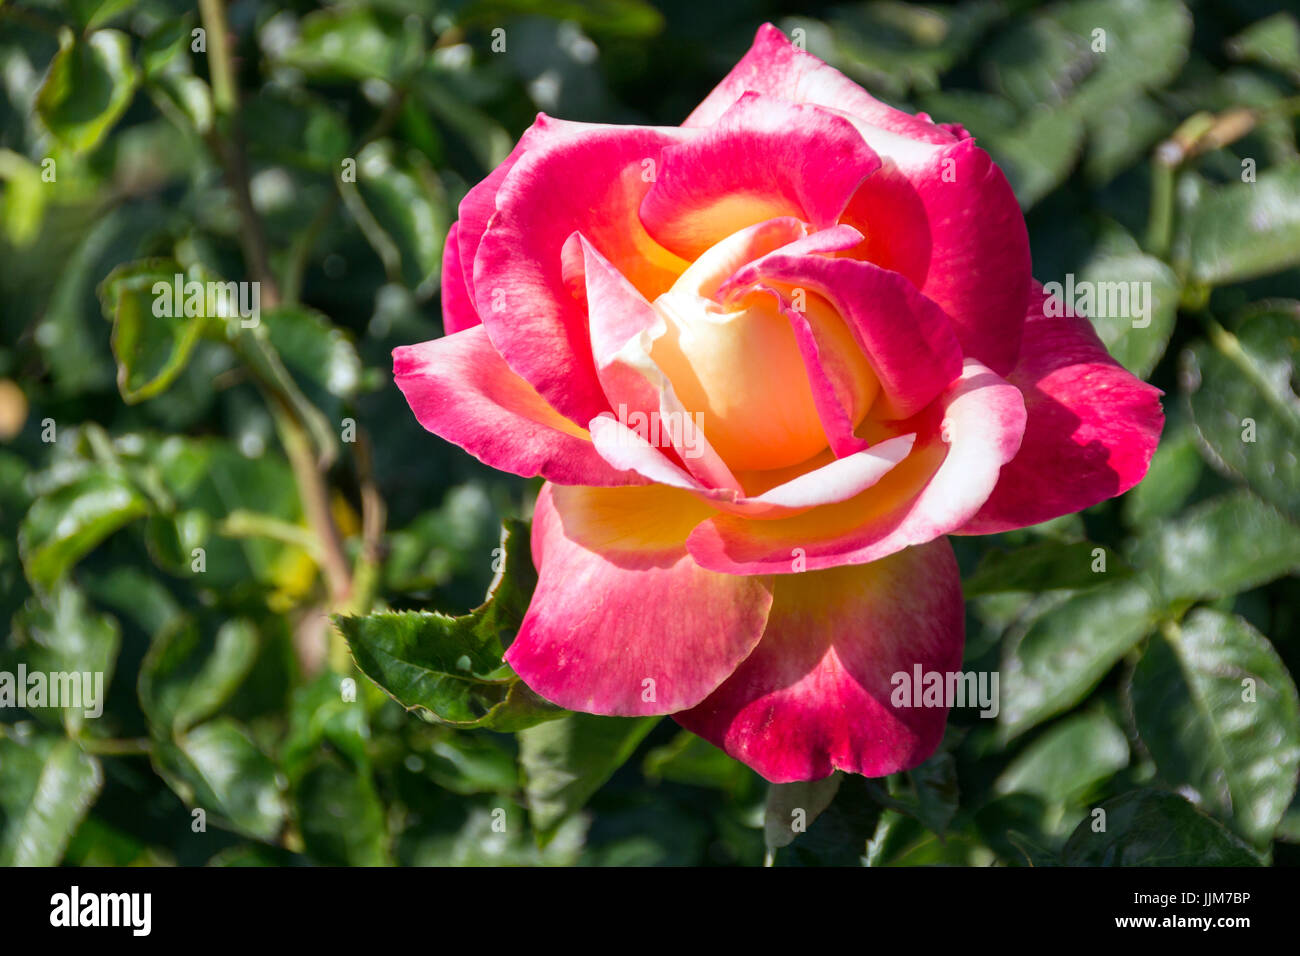 Flores del Parque de Las Rosas de Los Angeles Kalifornien, Captadas Bajo el Fuerte Calor de Una Tarde de Verano, Sus Delicados Petalos lichtbestän al sol Stockfoto